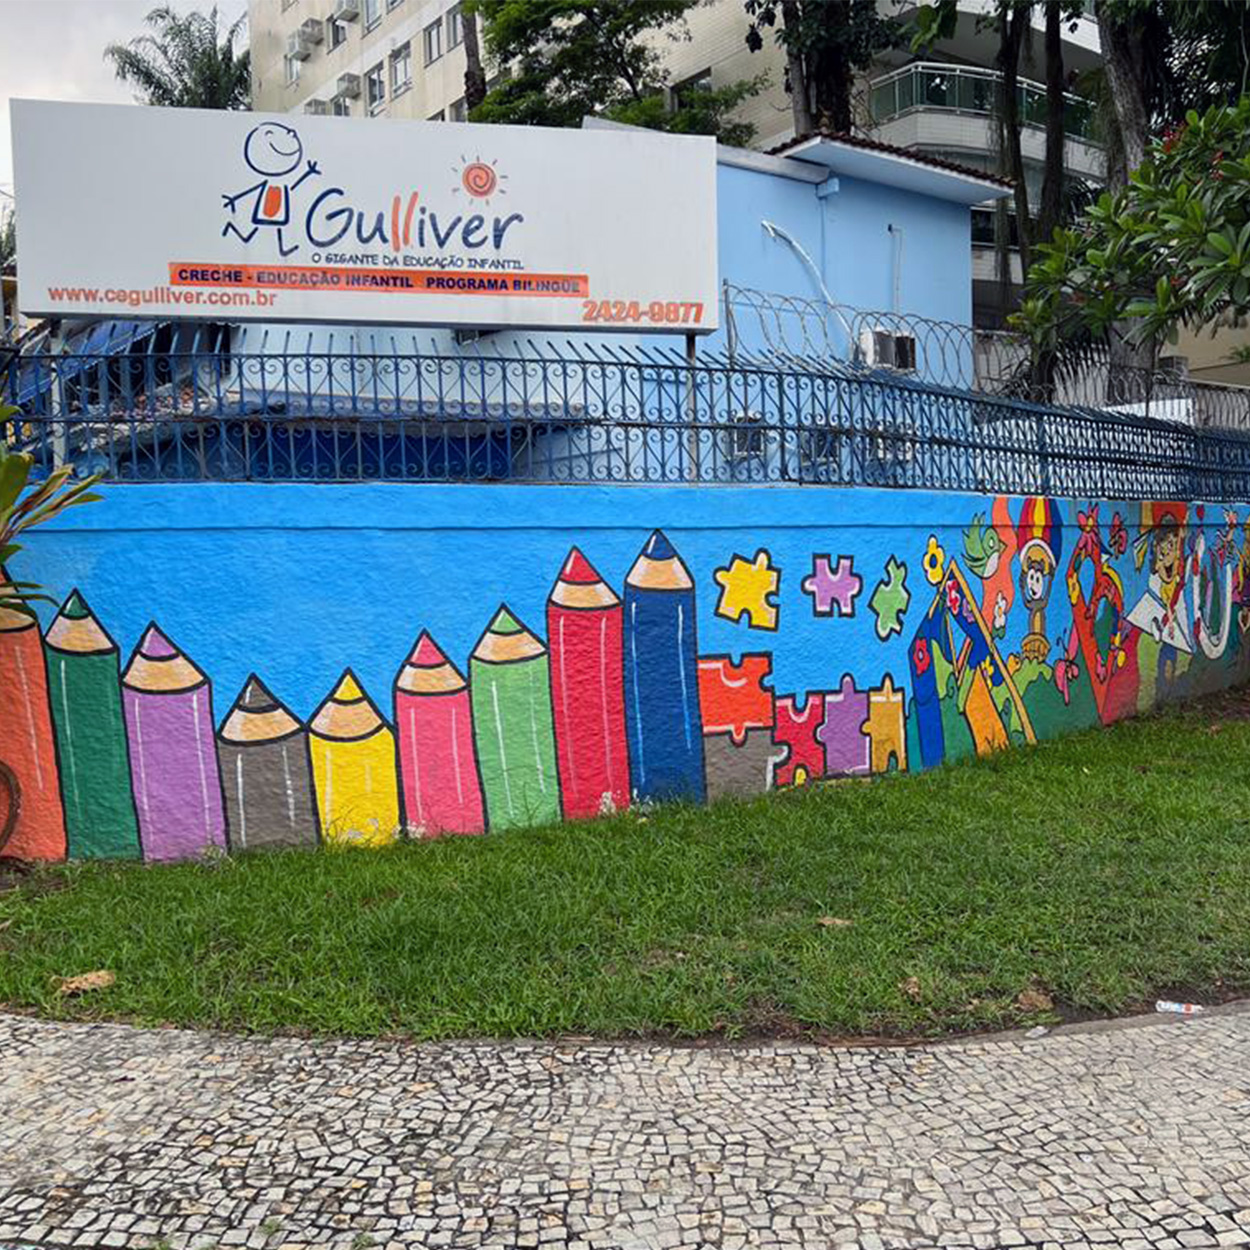 centro educacional gulliver jacarepaguá